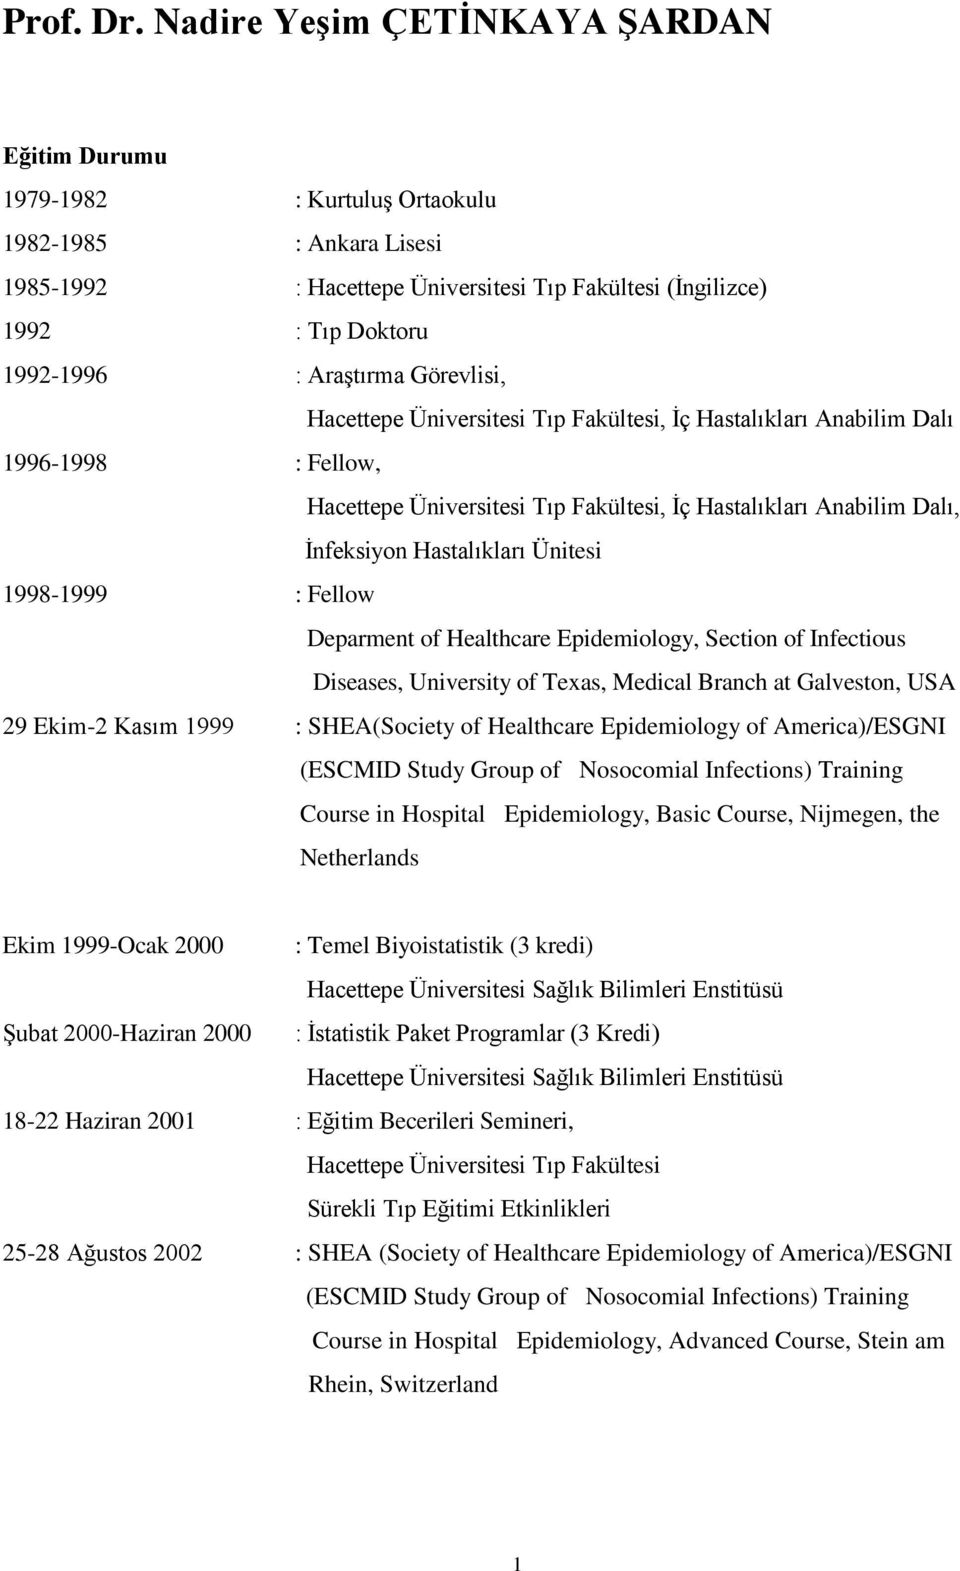 Araştırma Görevlisi, Hacettepe Üniversitesi Tıp Fakültesi, İç Hastalıkları Anabilim Dalı 1996-1998 : Fellow, Hacettepe Üniversitesi Tıp Fakültesi, İç Hastalıkları Anabilim Dalı, İnfeksiyon